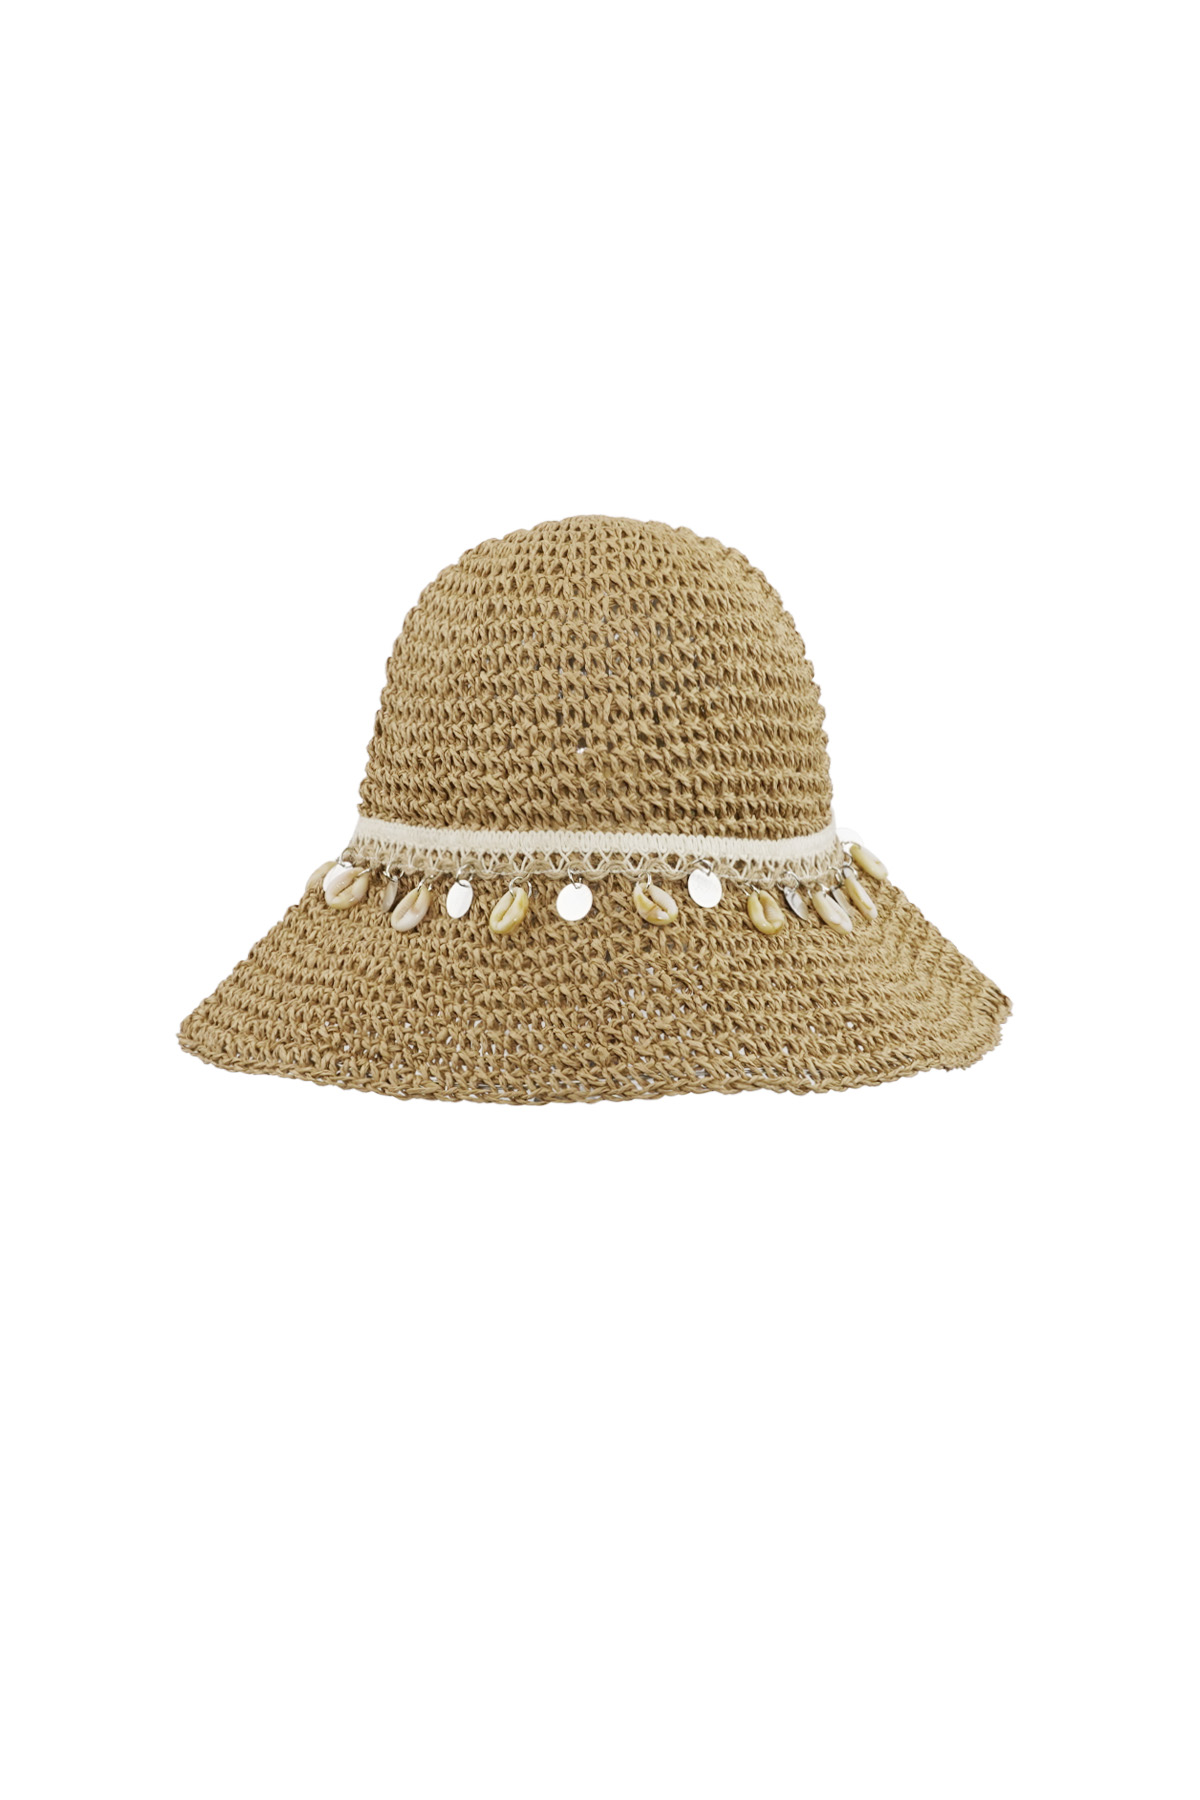 Deniz kabuklu plaj şapkası - kahverengi h5 